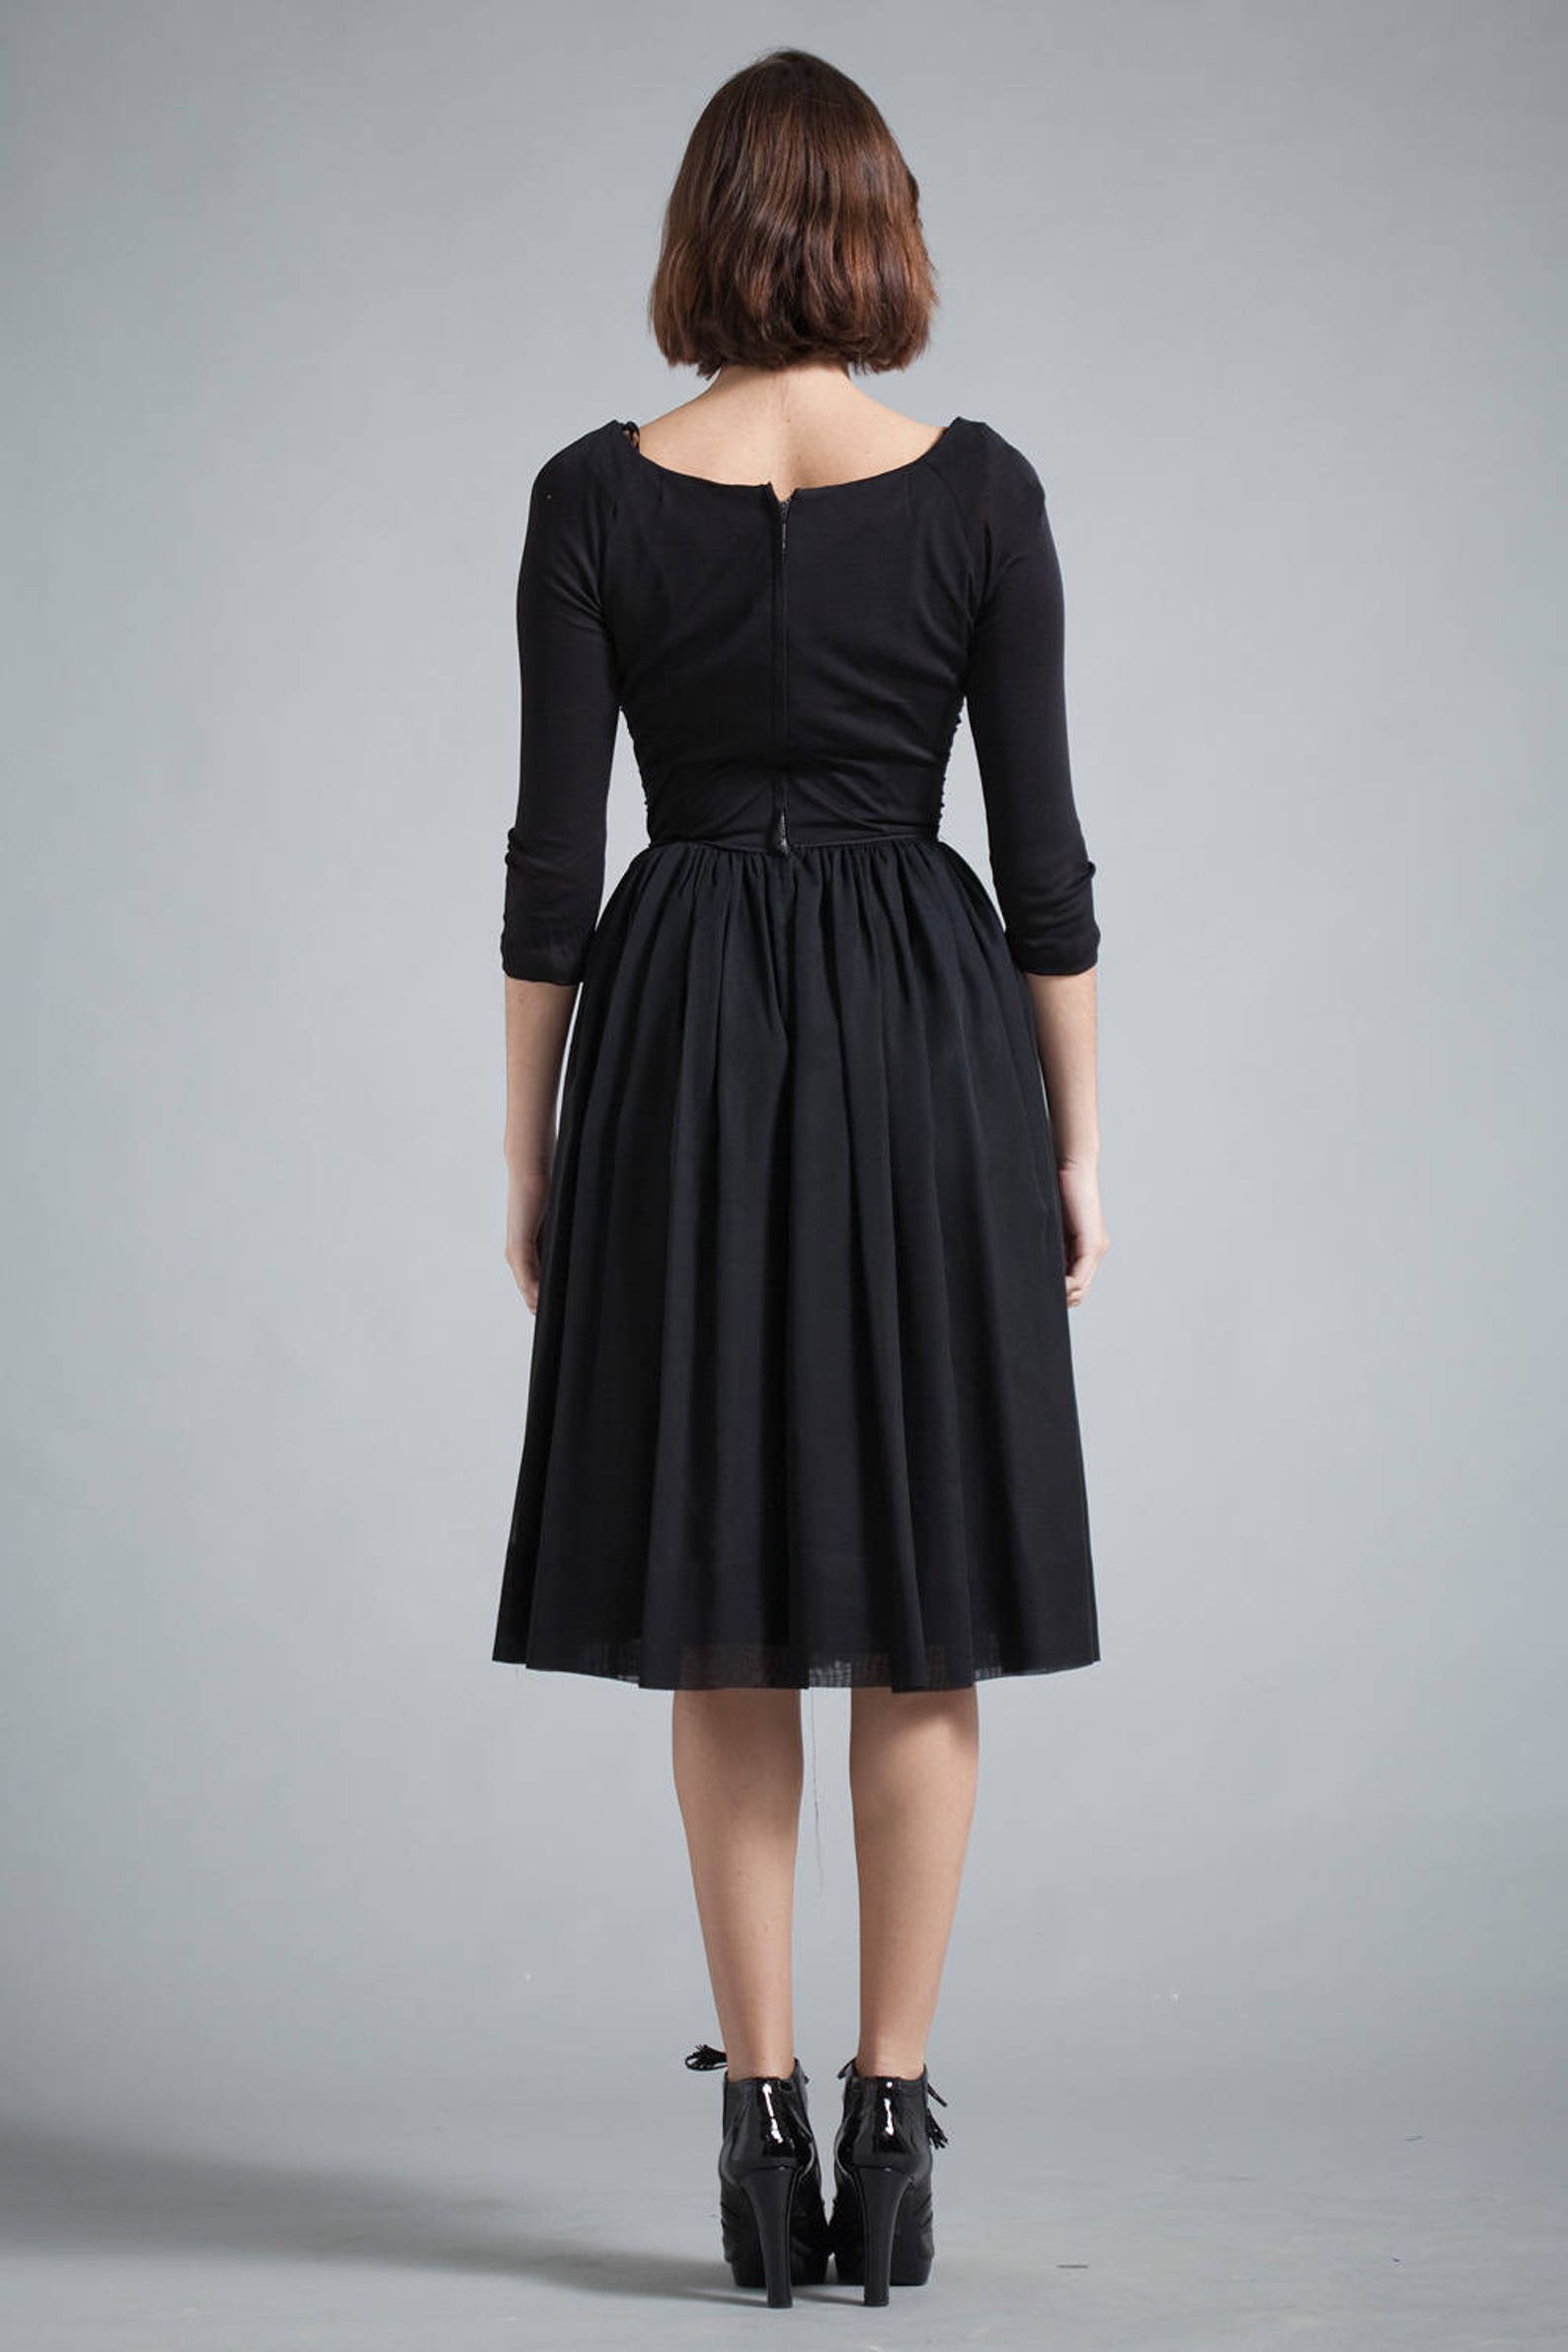 Vintage 50s 1950s LBD Little Black Crepe Dress Gathered 3/4 | Etsy